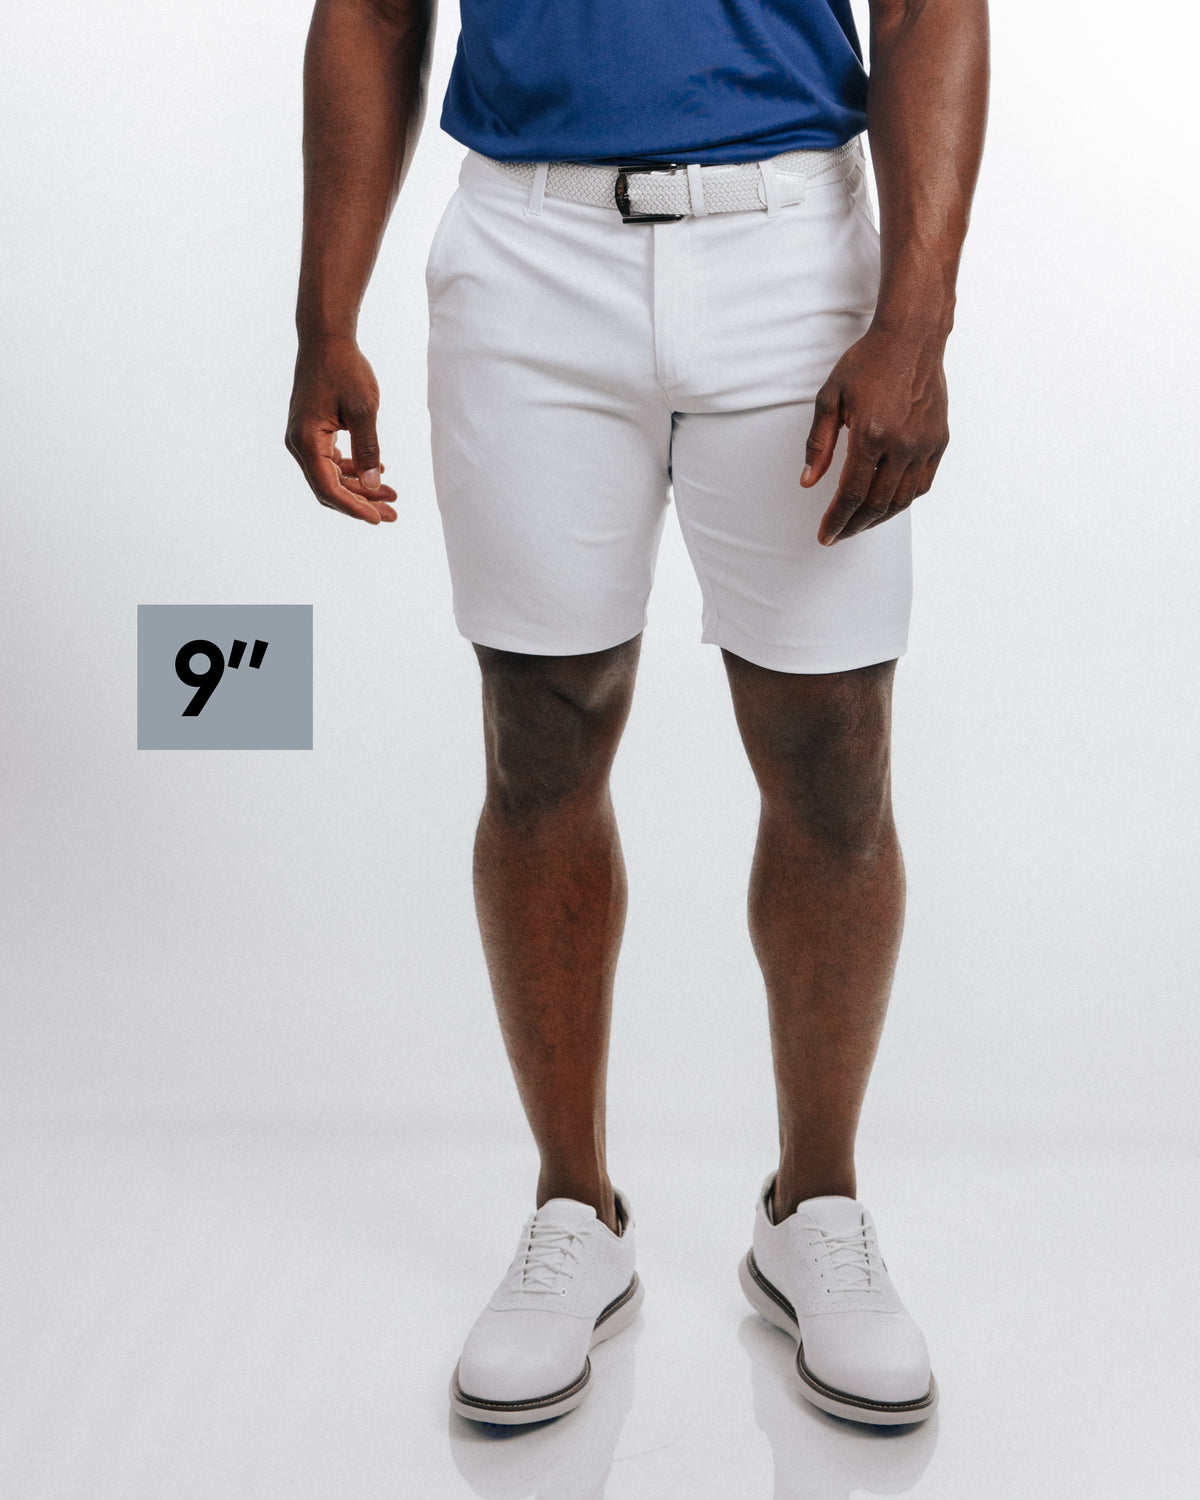 Primo White Shorts - 7", 9", 11"